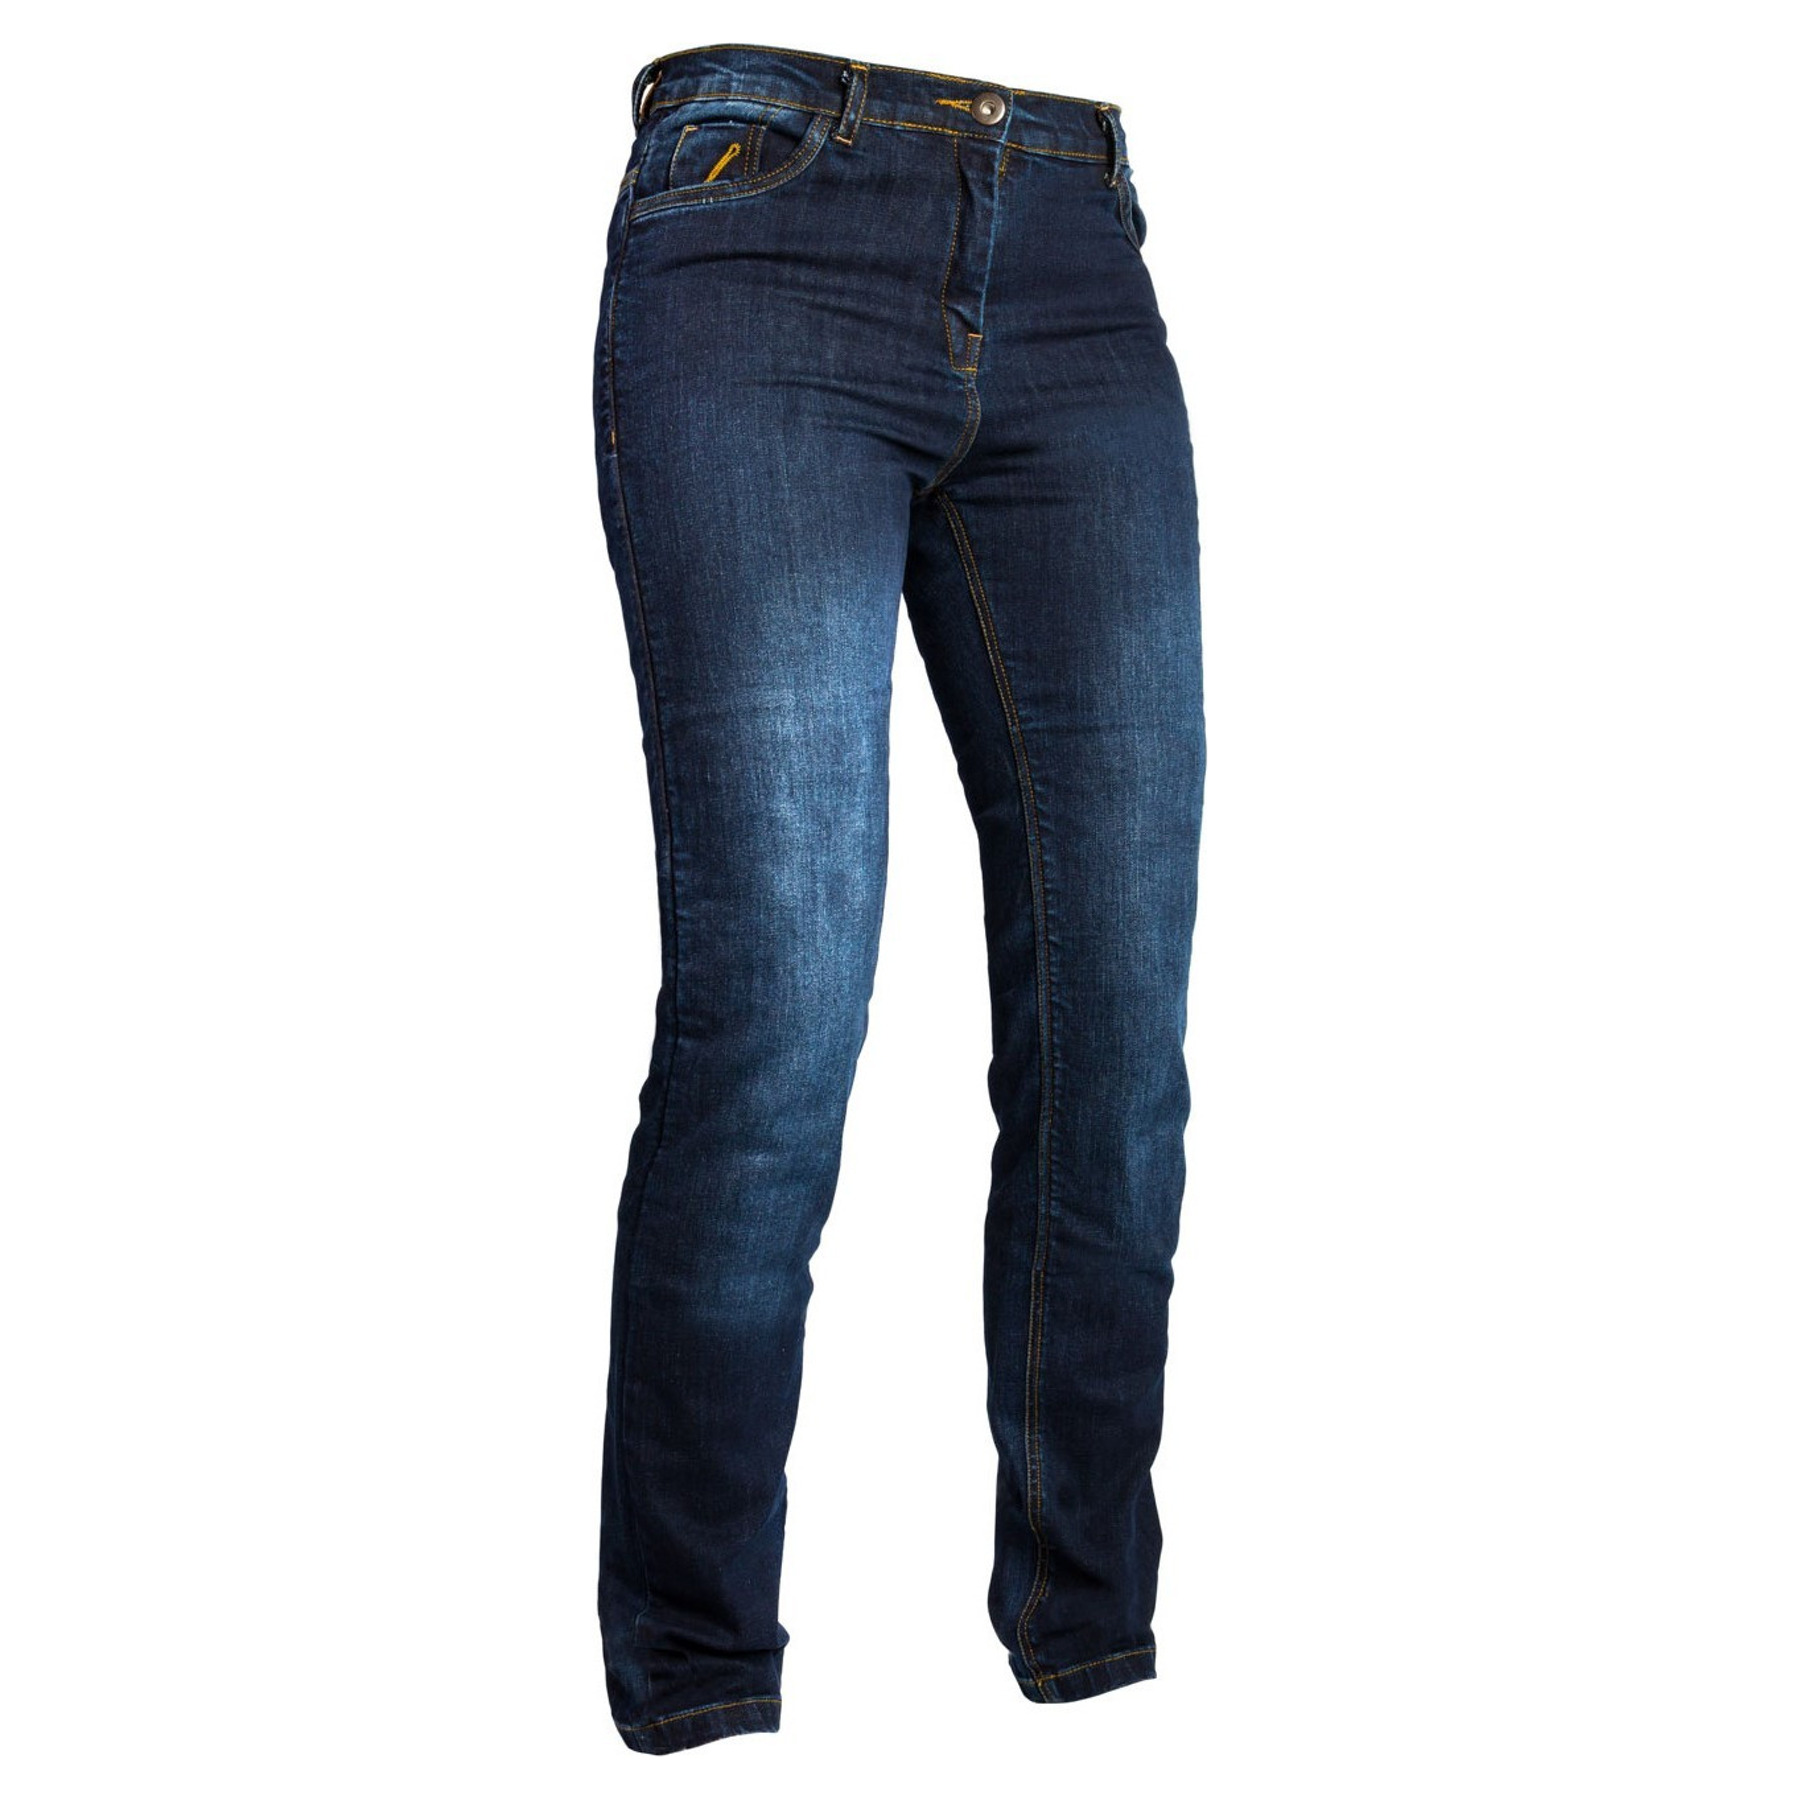 Grand Canyon Hornet Jeans Dames, Blauw - bestel laagste prijs, reviews en beoordelingen. Alle Motorjeans direct online bestellen via motorkledingoutlet.nl